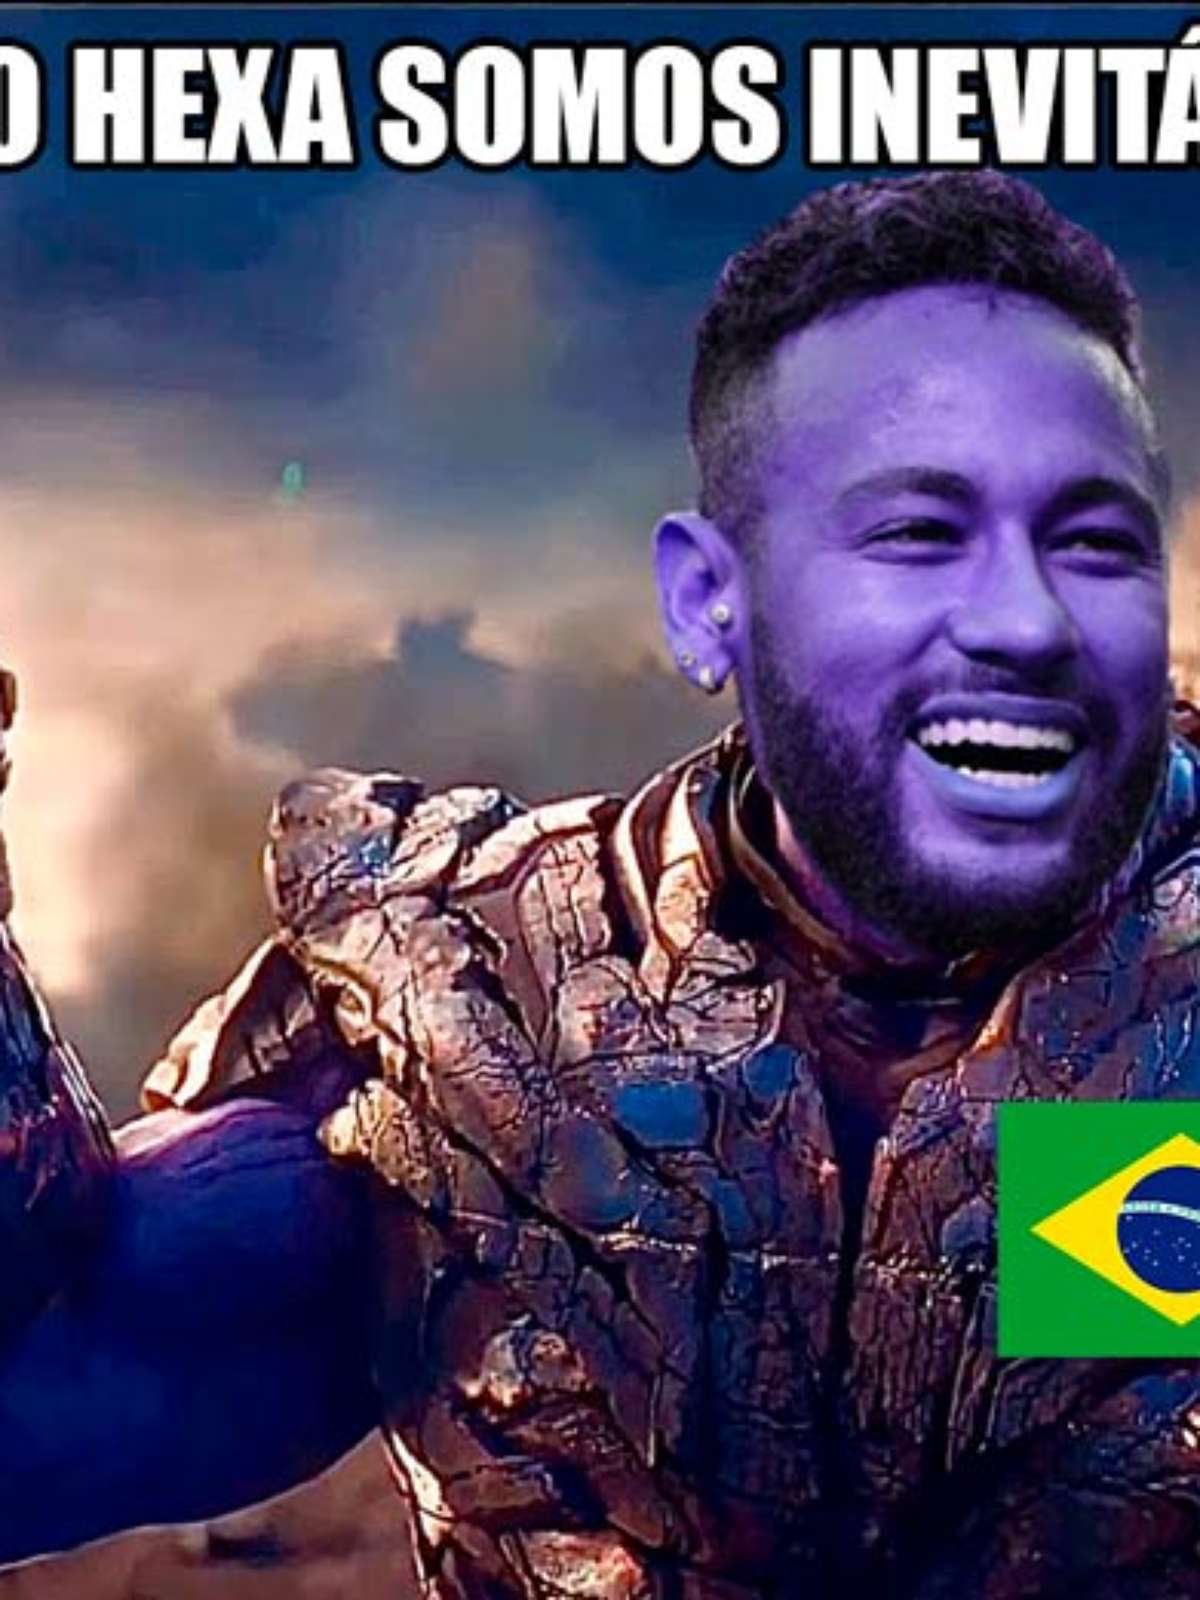 Veja os memes da goleada do Brasil sobre a Coreia do Sul